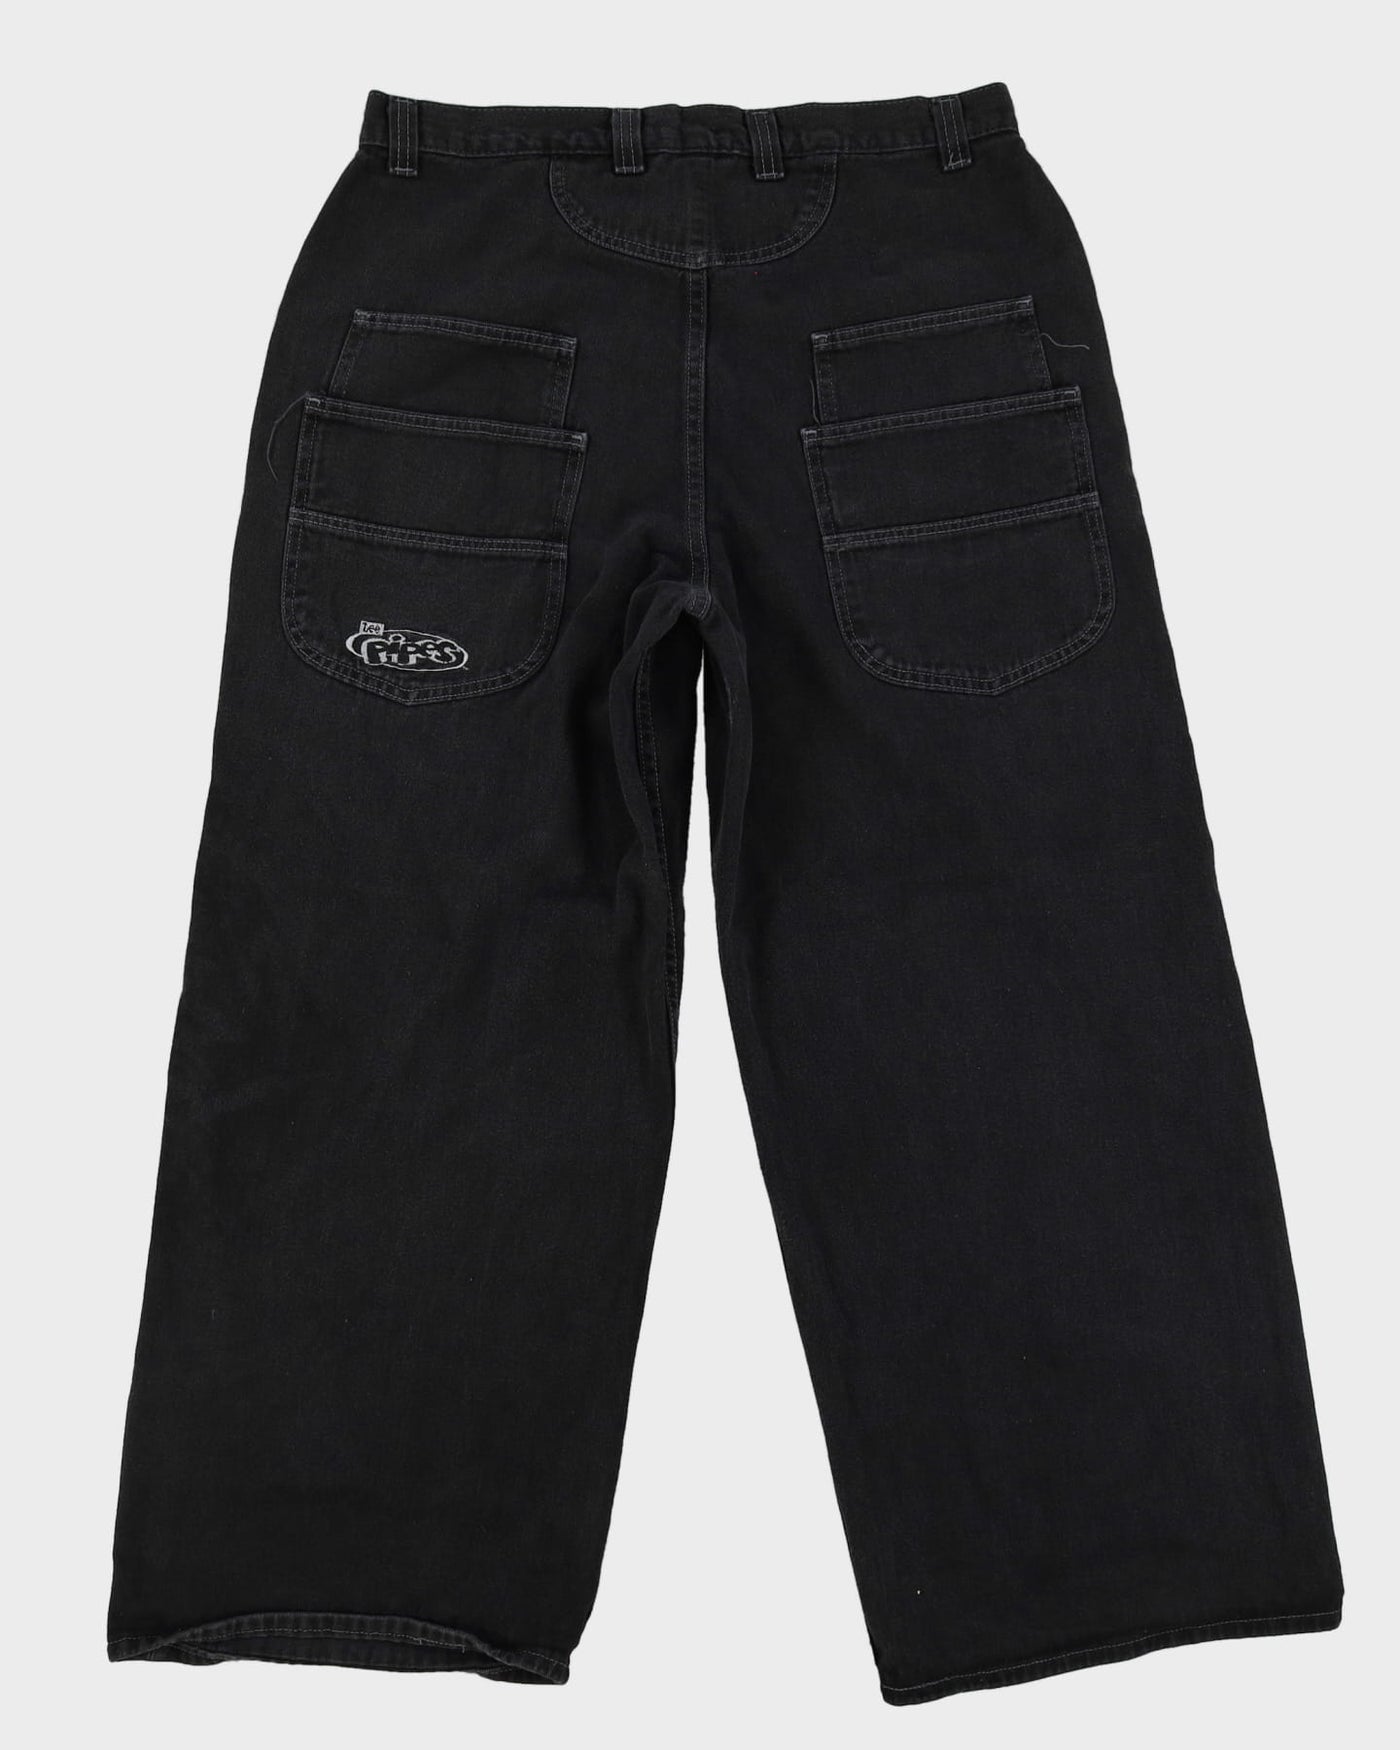 Vintage 90s LEE Pipes Dark Wash Black Baggy Fit Wide Leg Skater Jeans - W37 L31